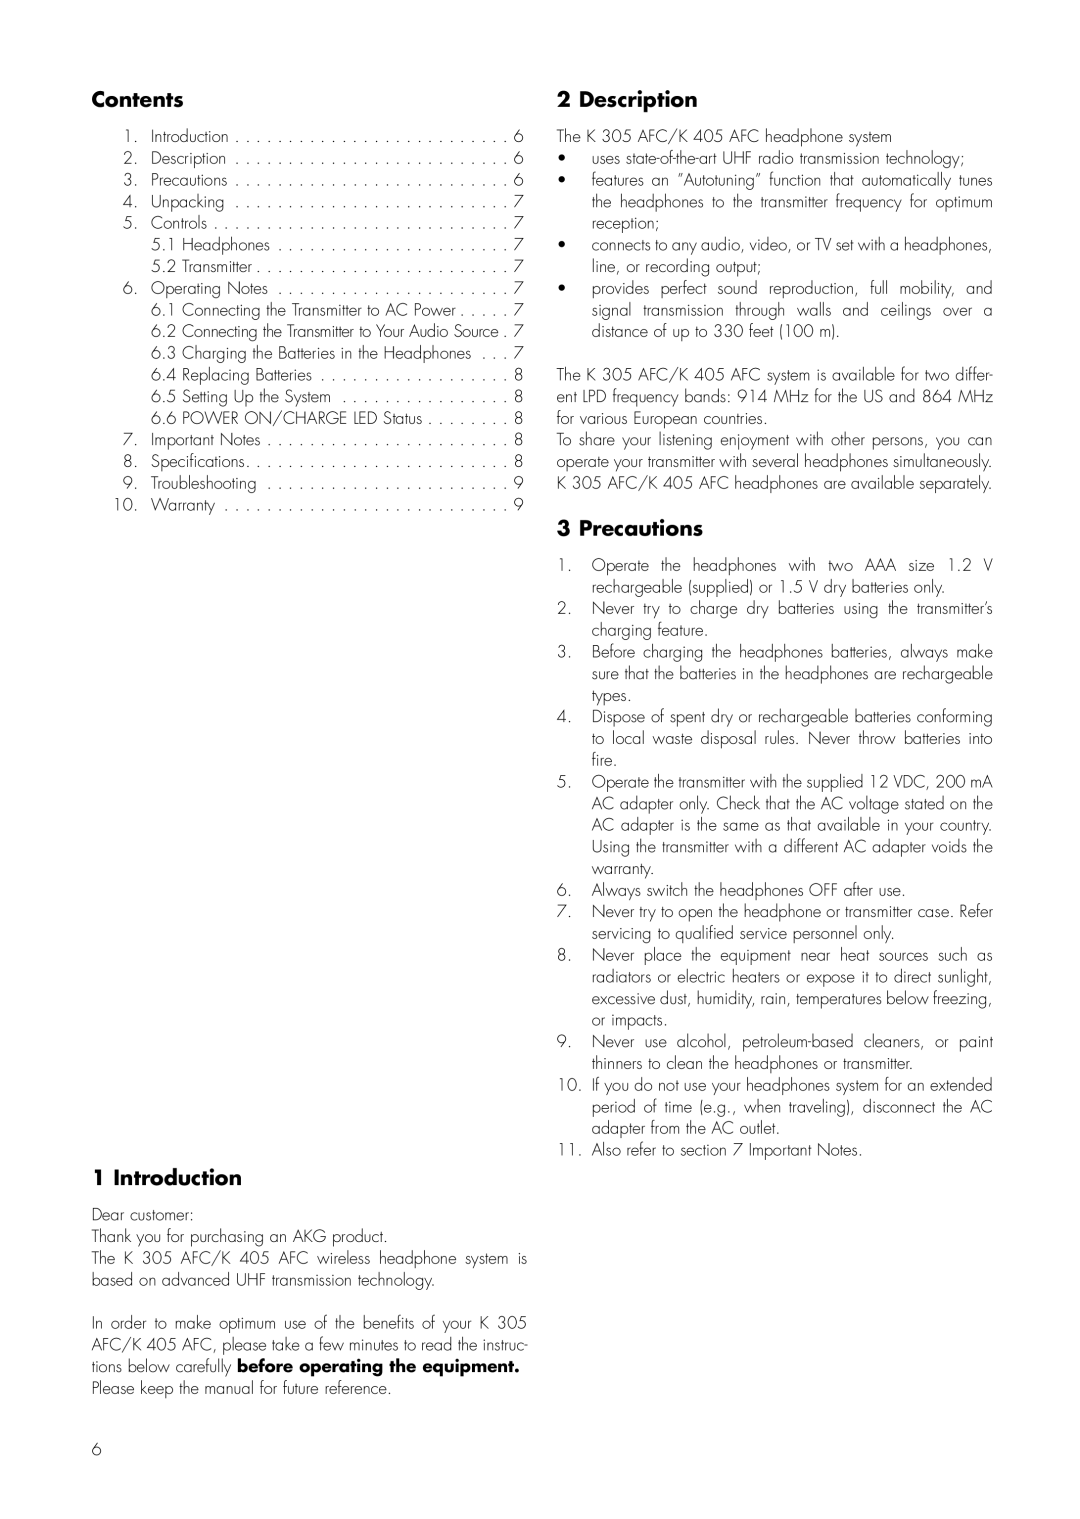 AKG Acoustics K 305 AFC, K 405 AFC manual Contents, Introduction, Description, Precautions 